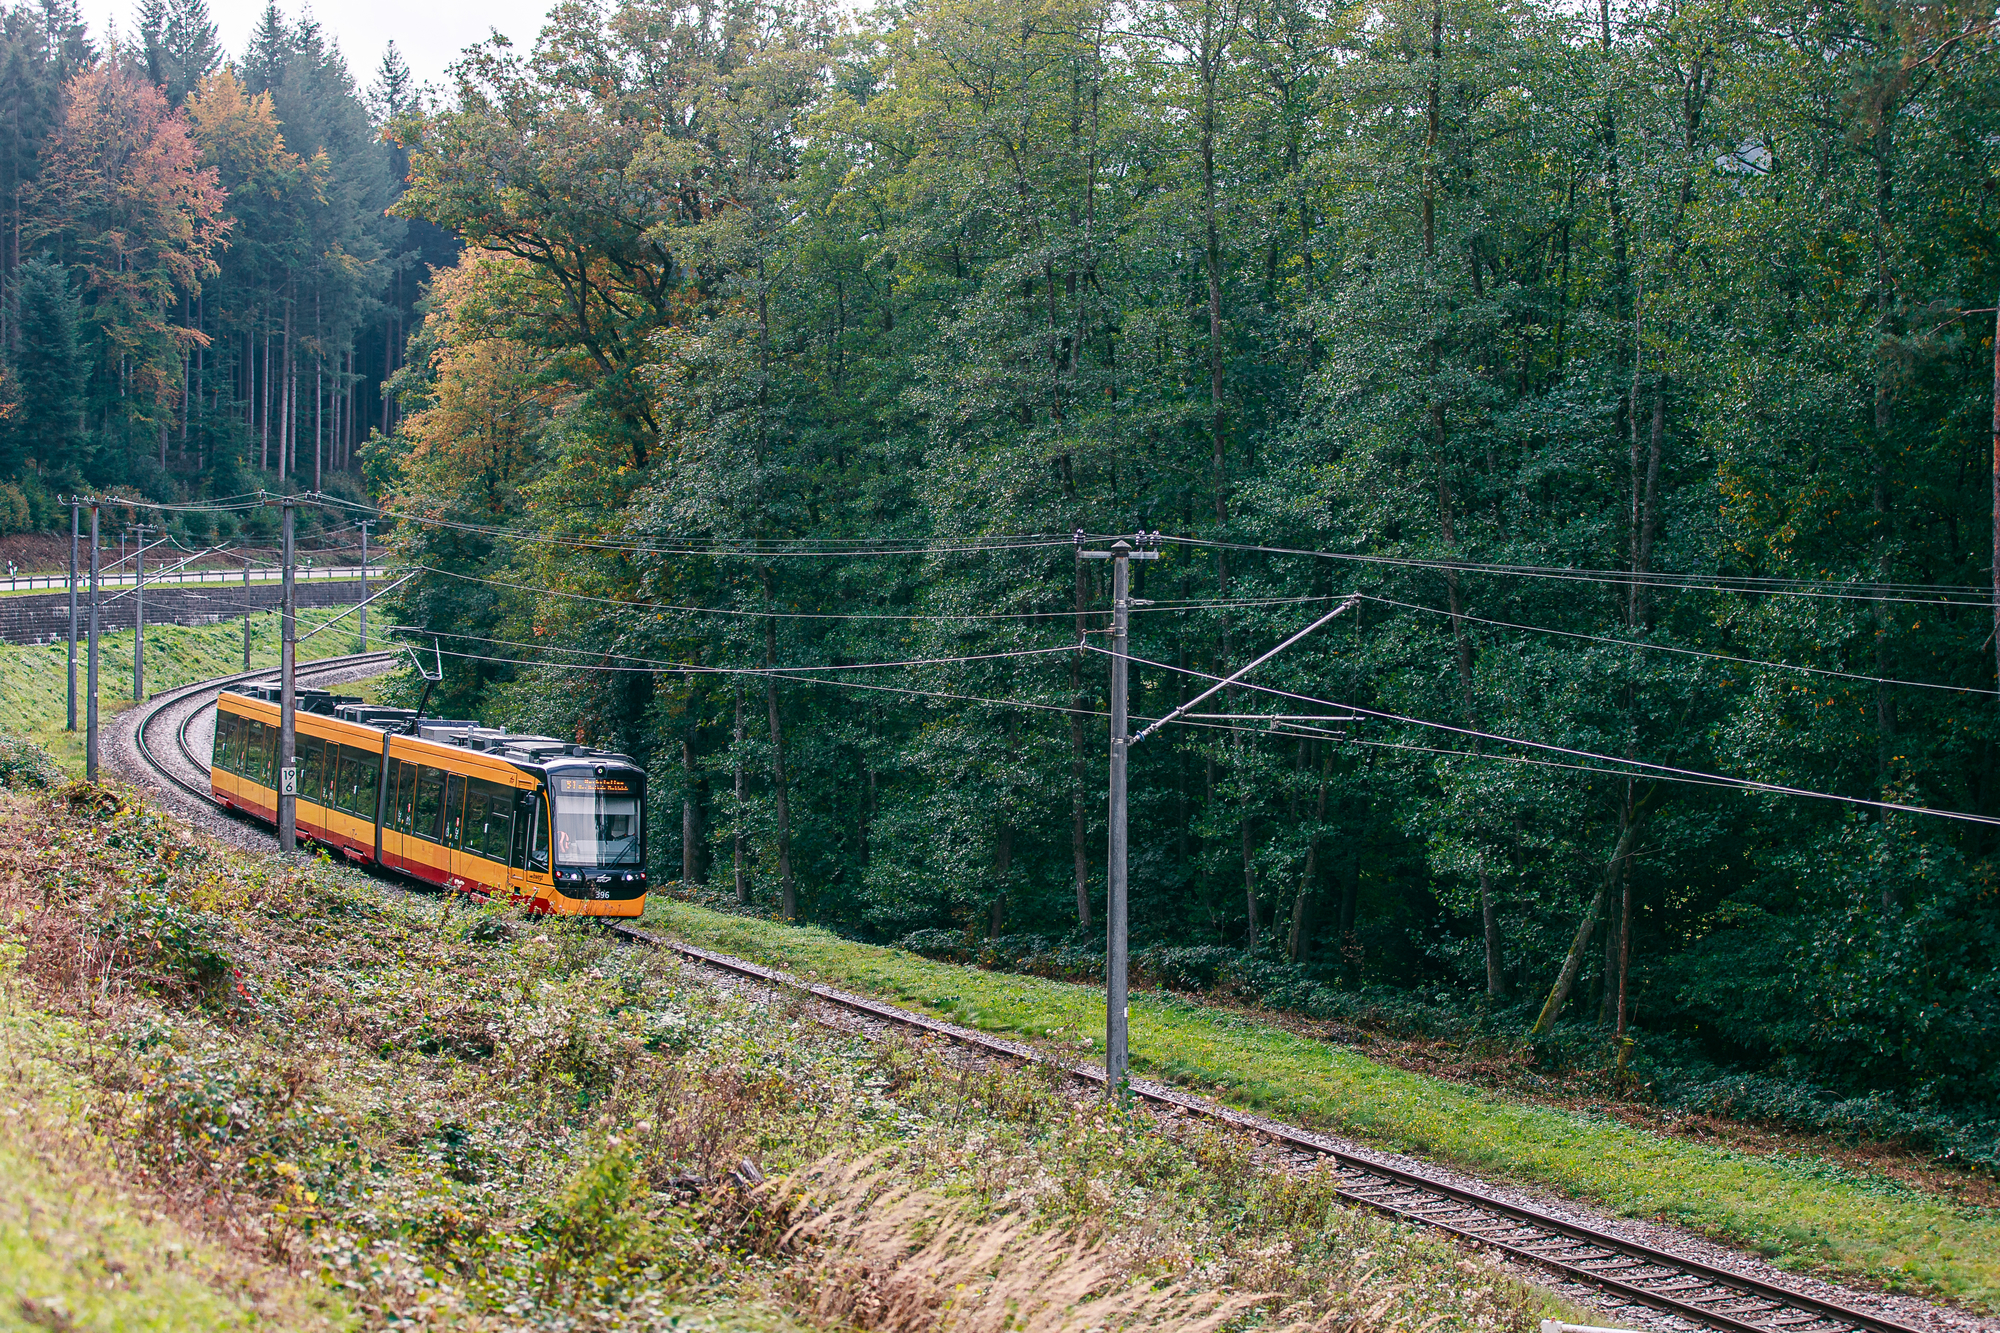 Eine AVG-Stadbahn fährt durch das Albtal. Neben der Bahnstrecke stehen Bäume.